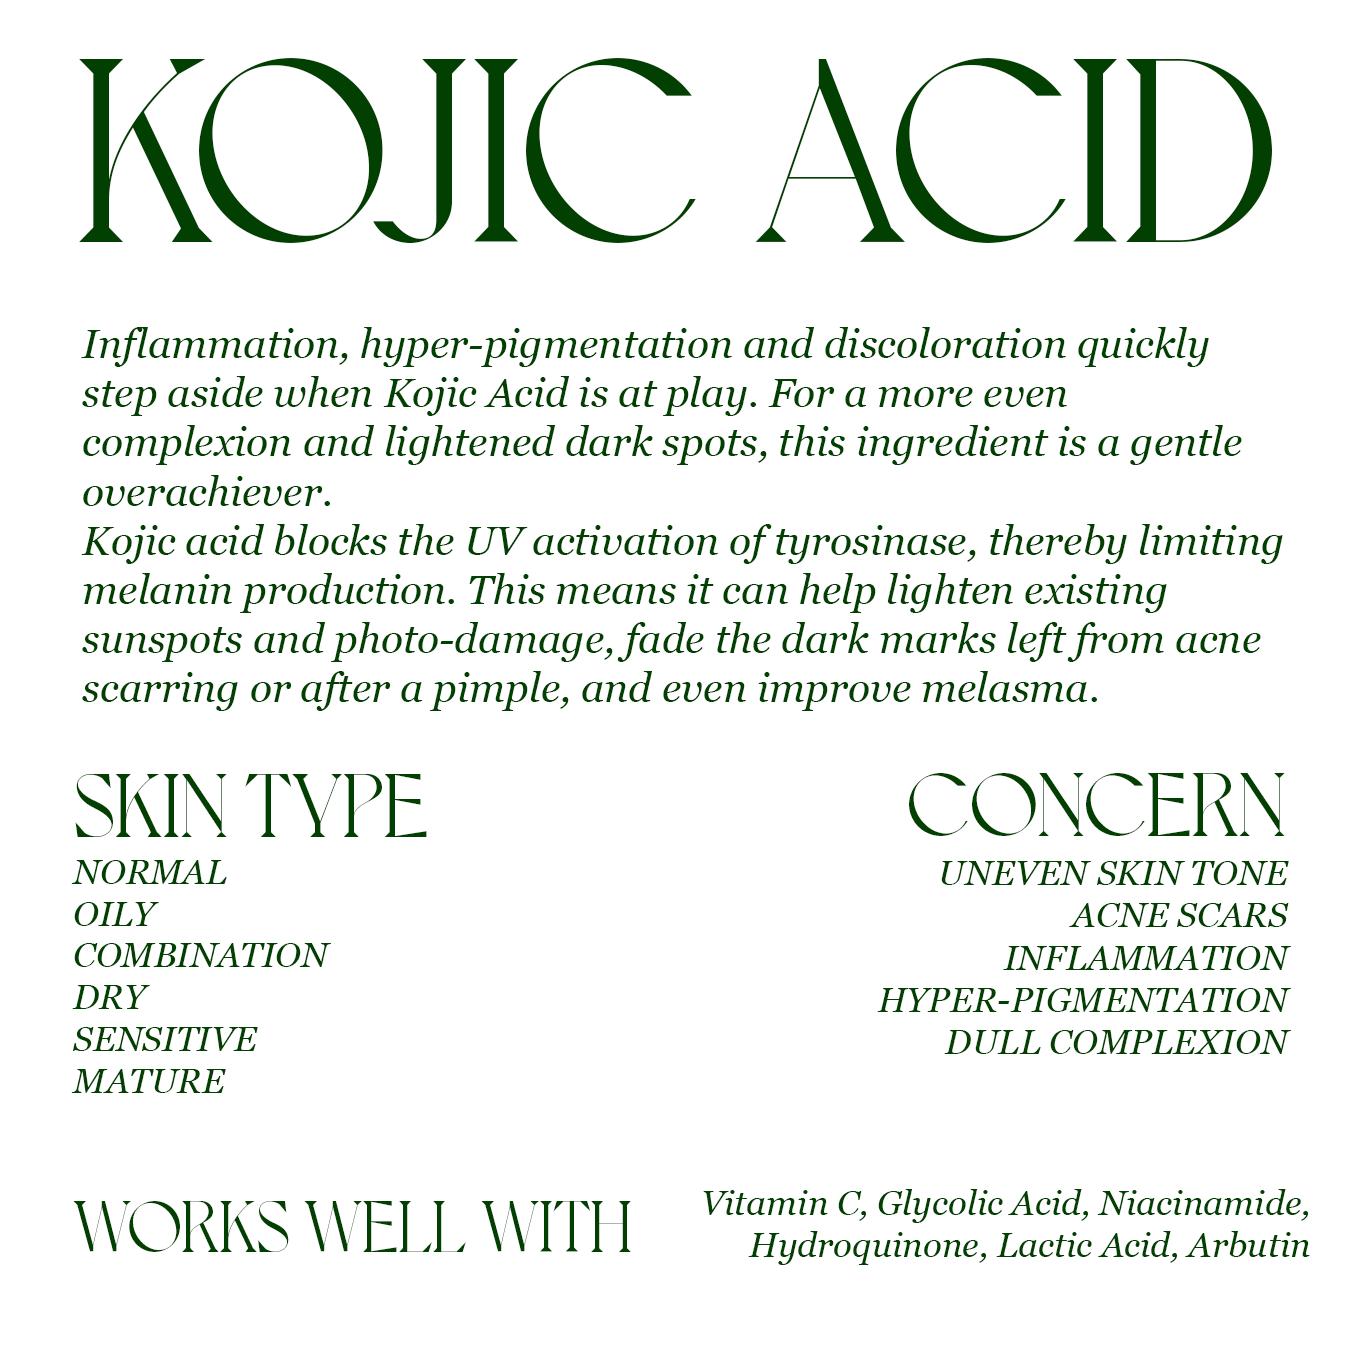 kojic acid benefits and skin concerns